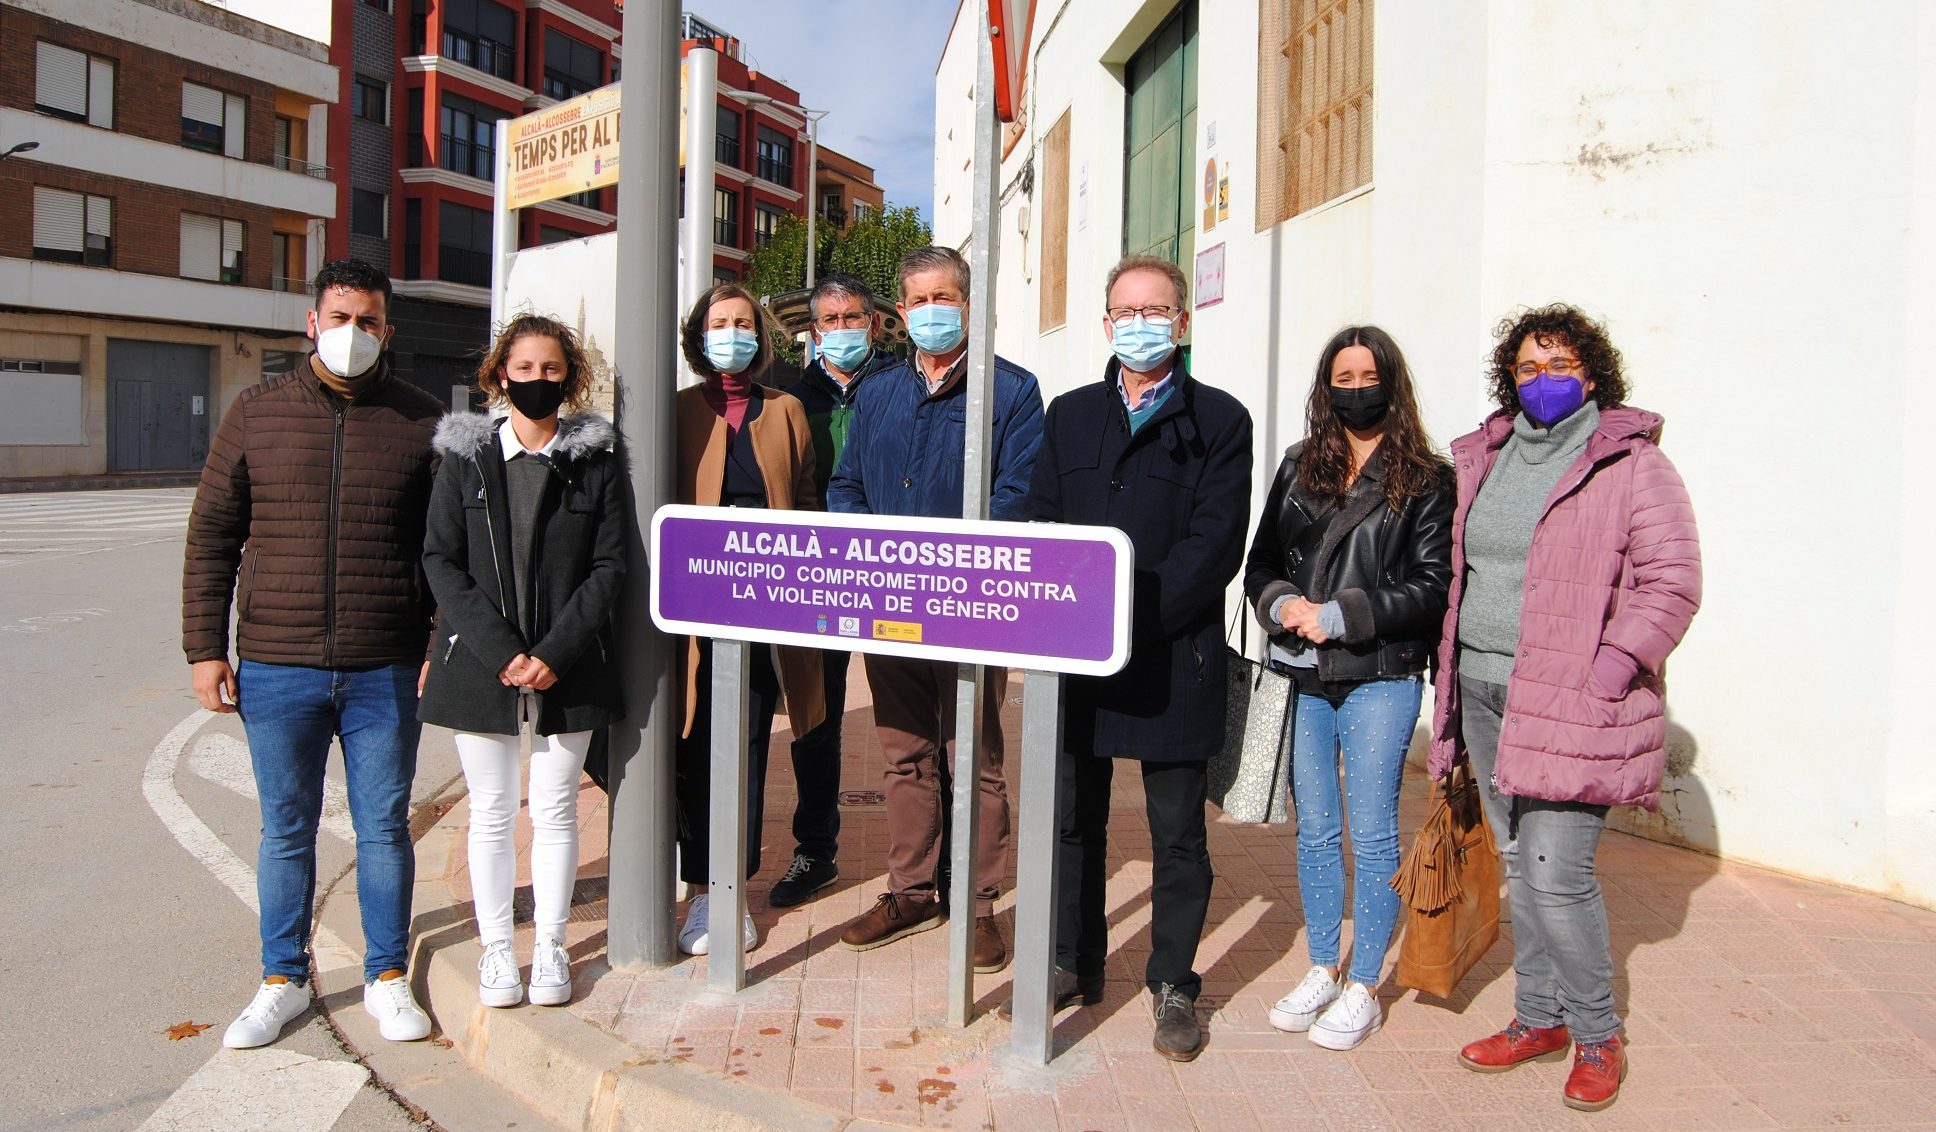 Alcalà-Alcossebre instal·la senyals per a mostrar el seu compromís contra la violència de gènere